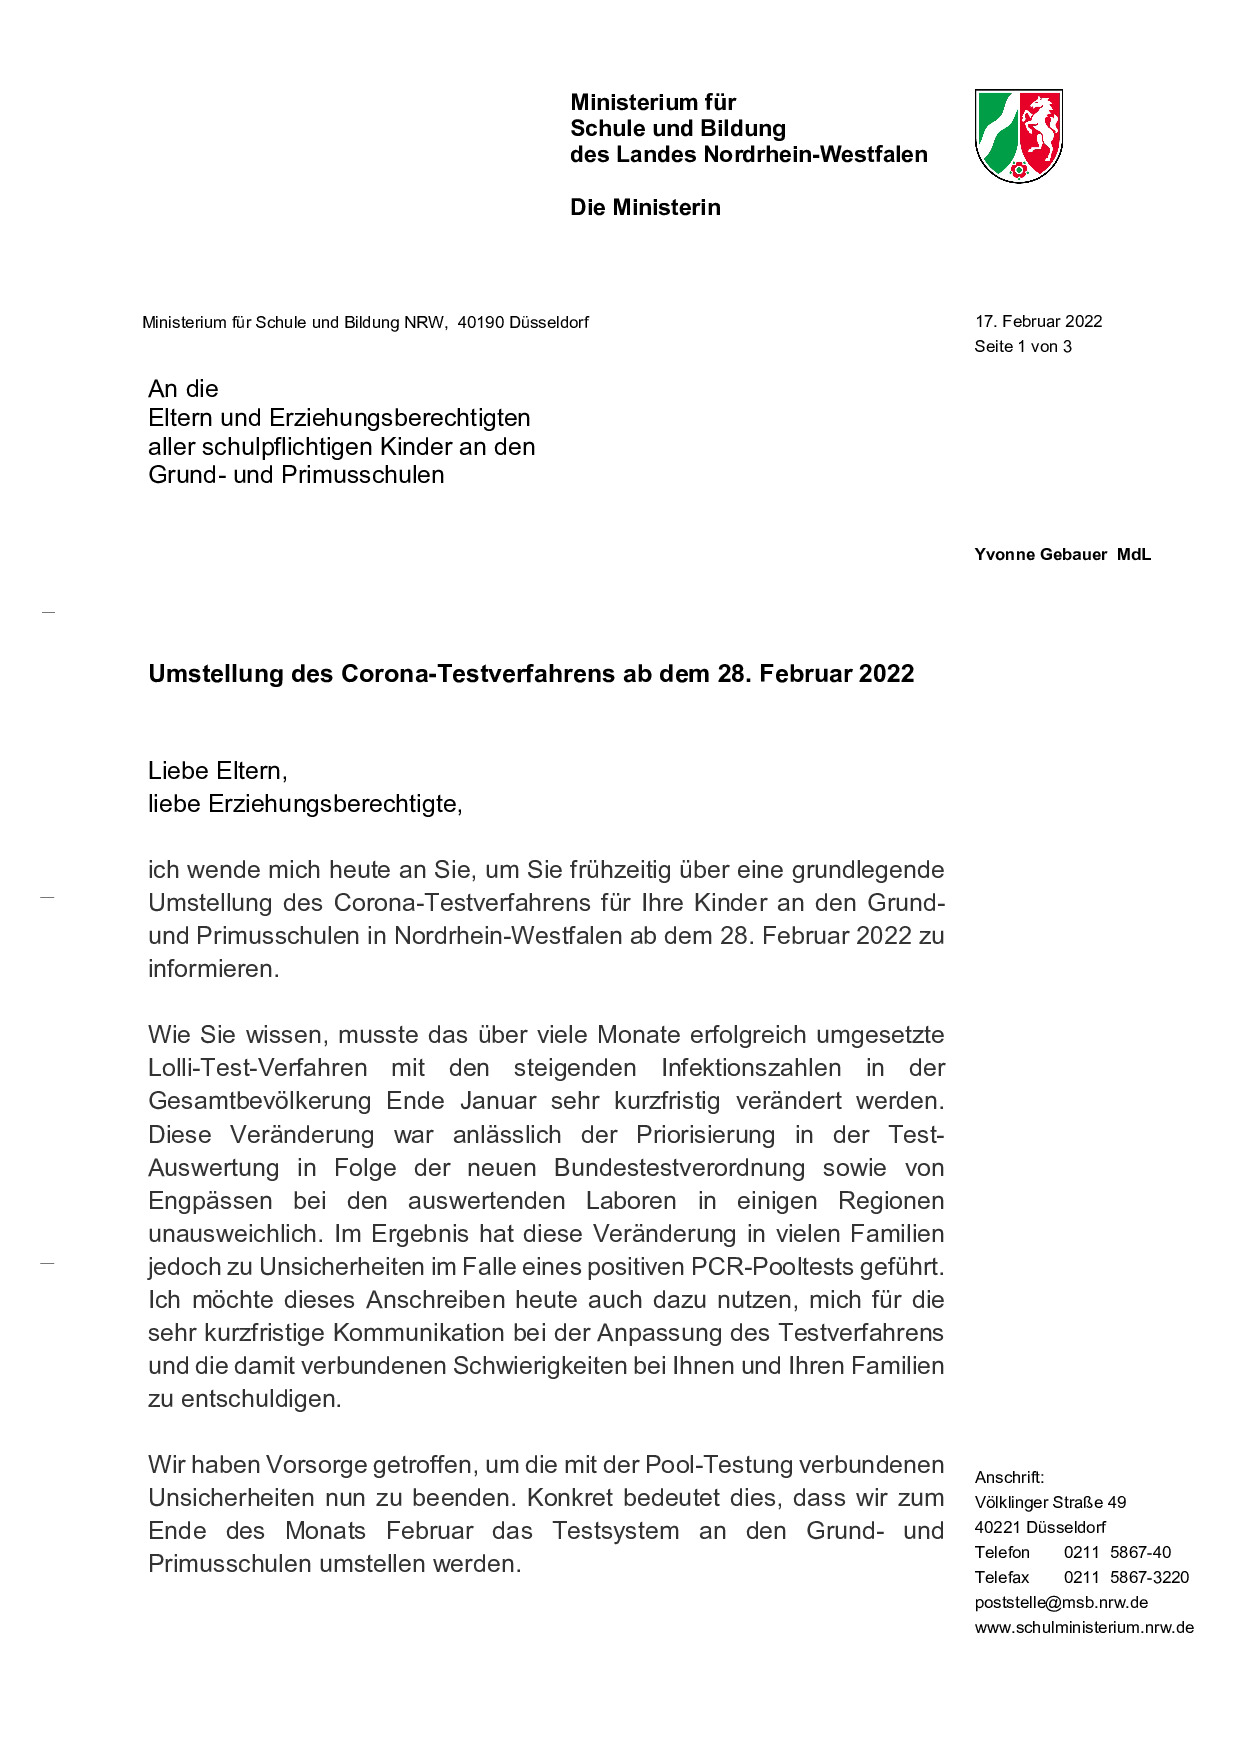 Elternbrief der Ministerin Gebauer vom 17.02.2022 zur Umstellung des Testverfahrens